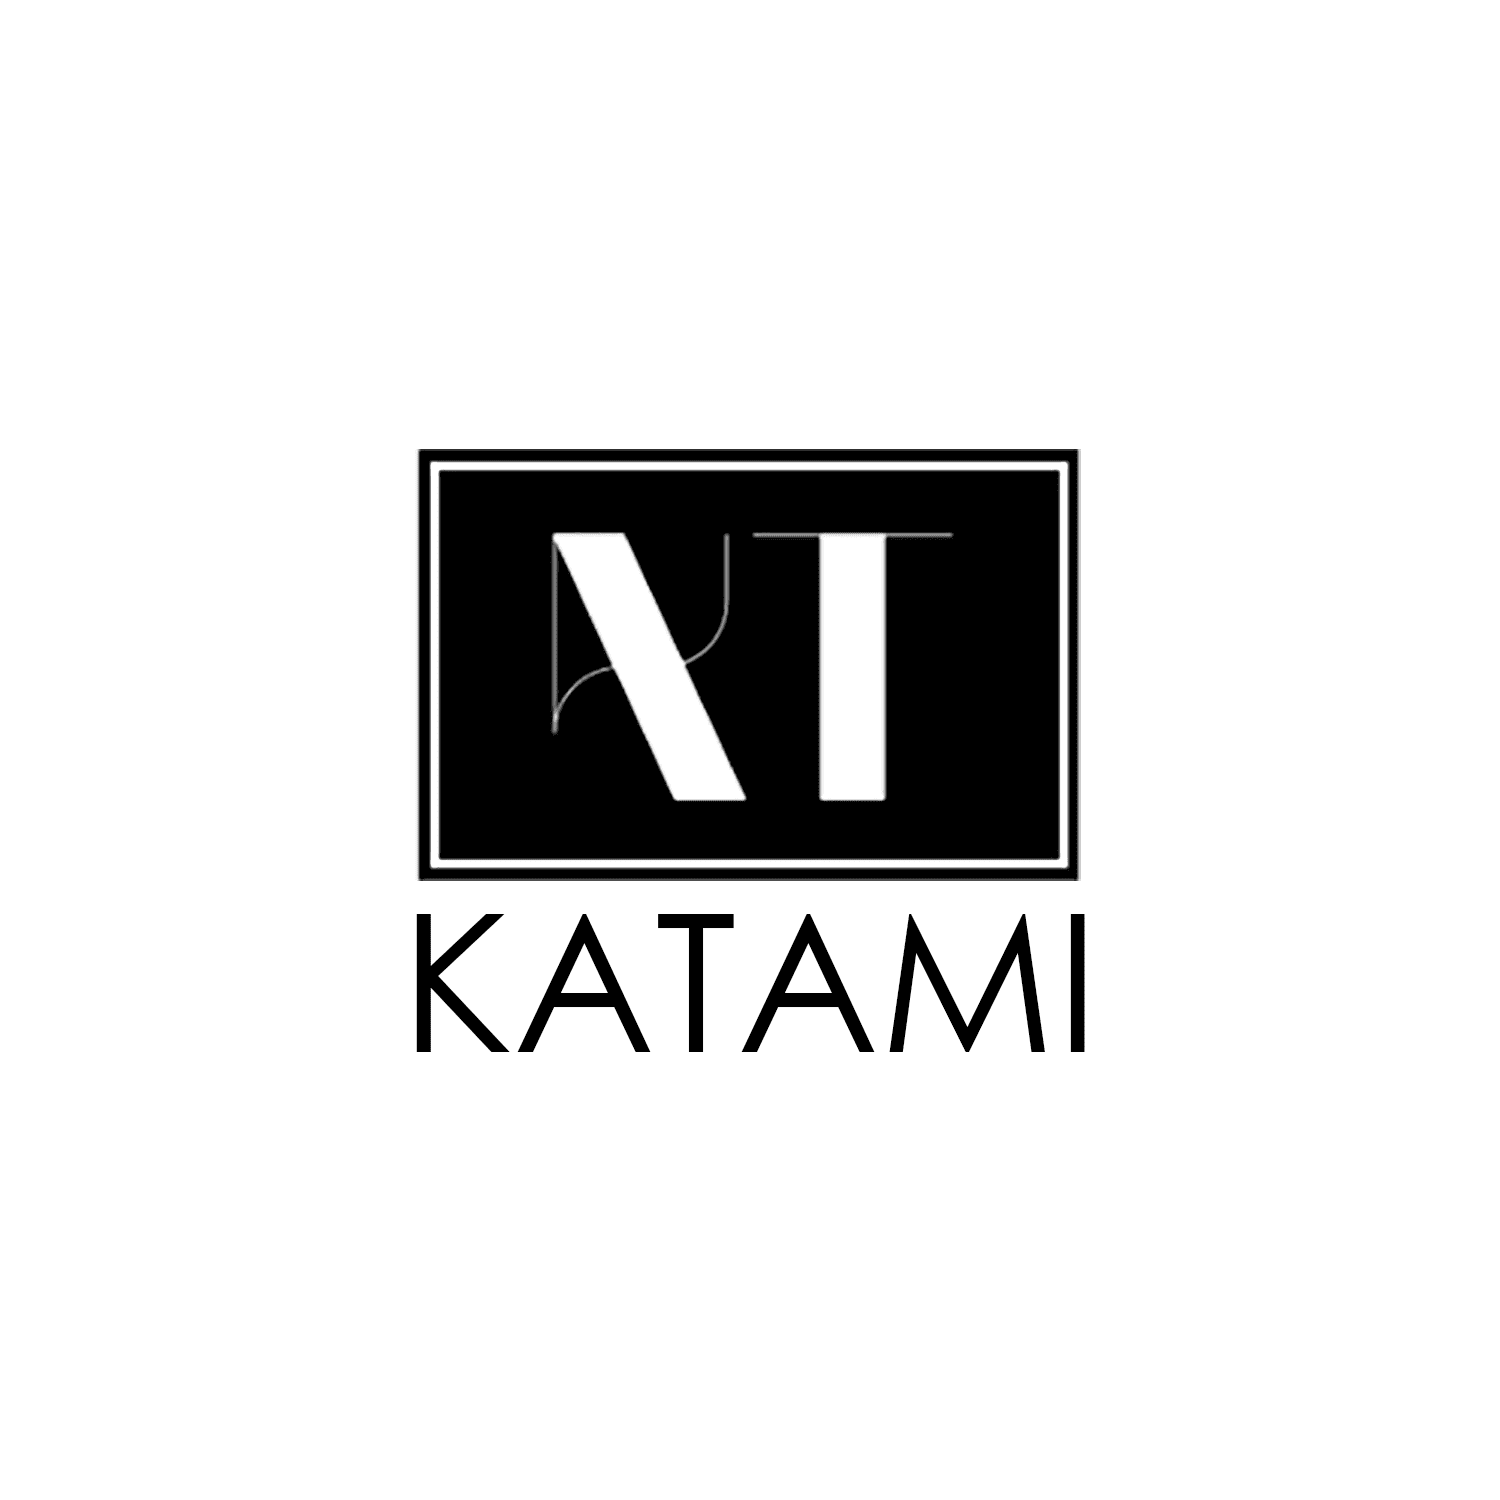 Katami